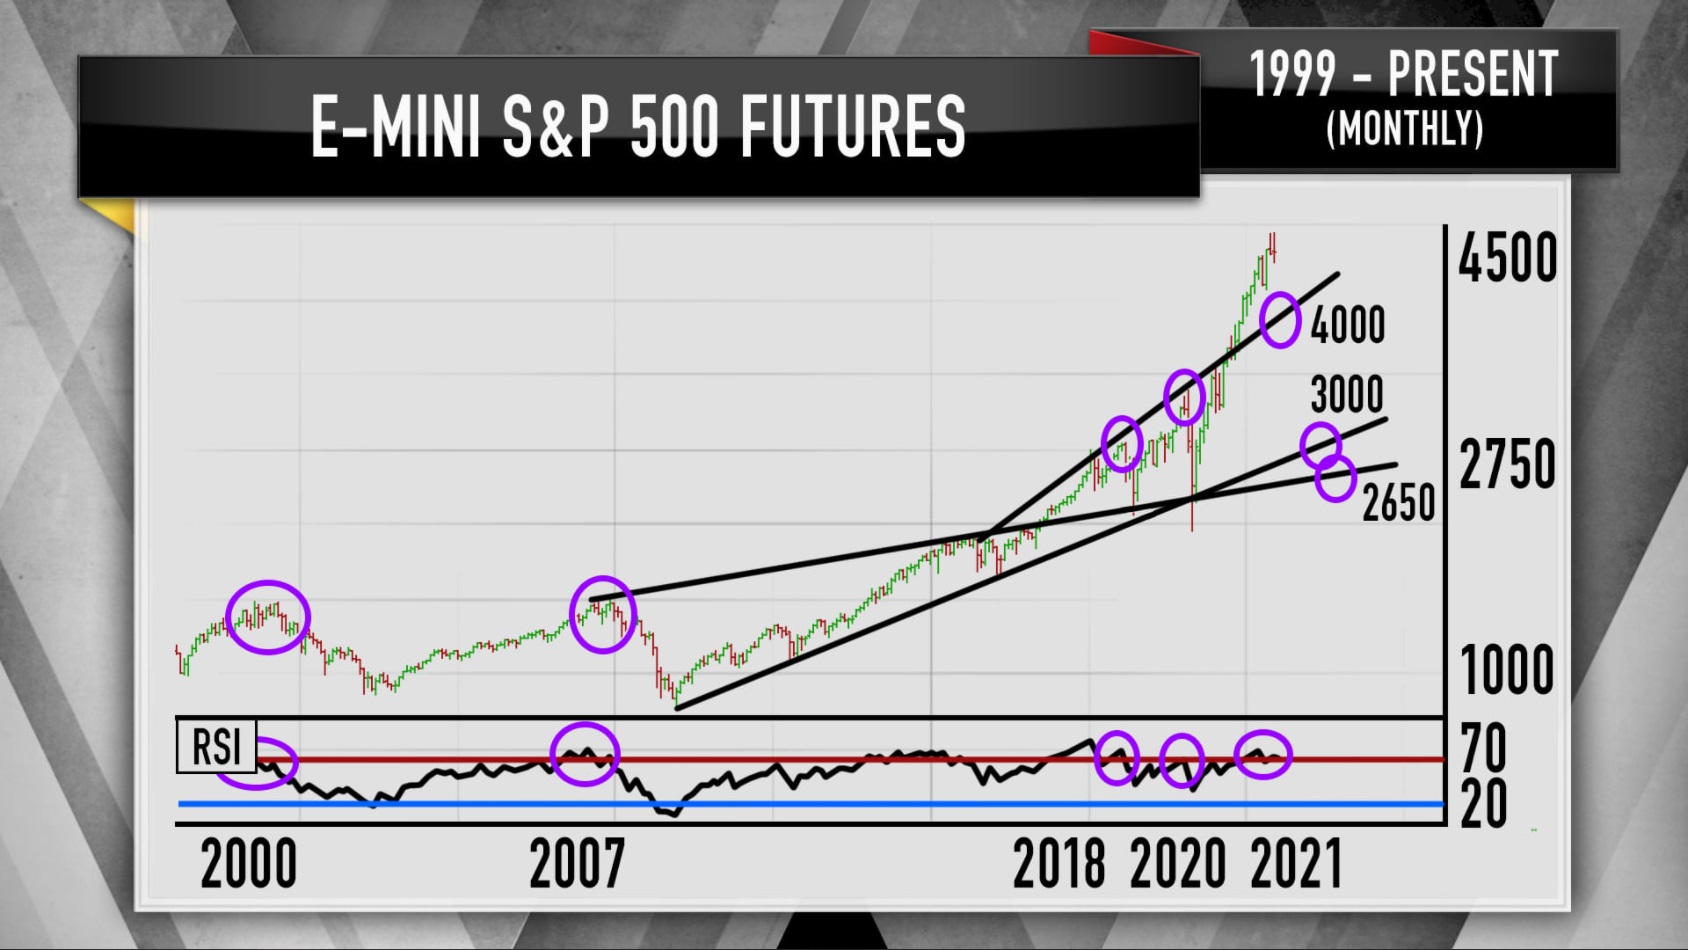 Jim Cramer: Các biểu đồ cho thấy S&P 500 có thể không tăng mạnh vào năm 2022 như đã từng trong năm 2021